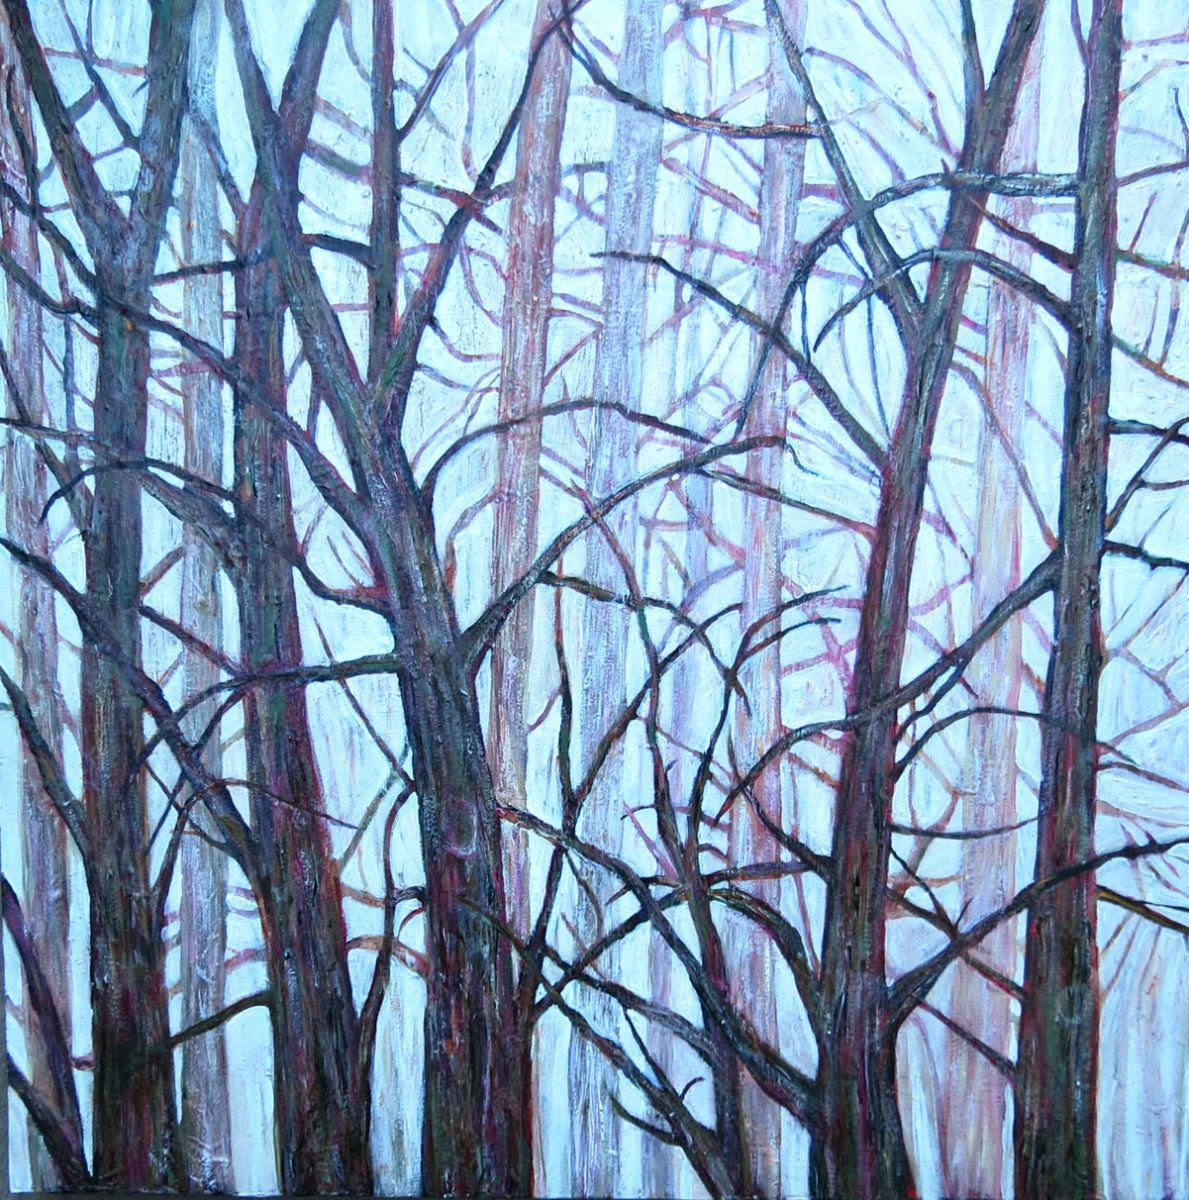 Misty Wood by Roz Edwards